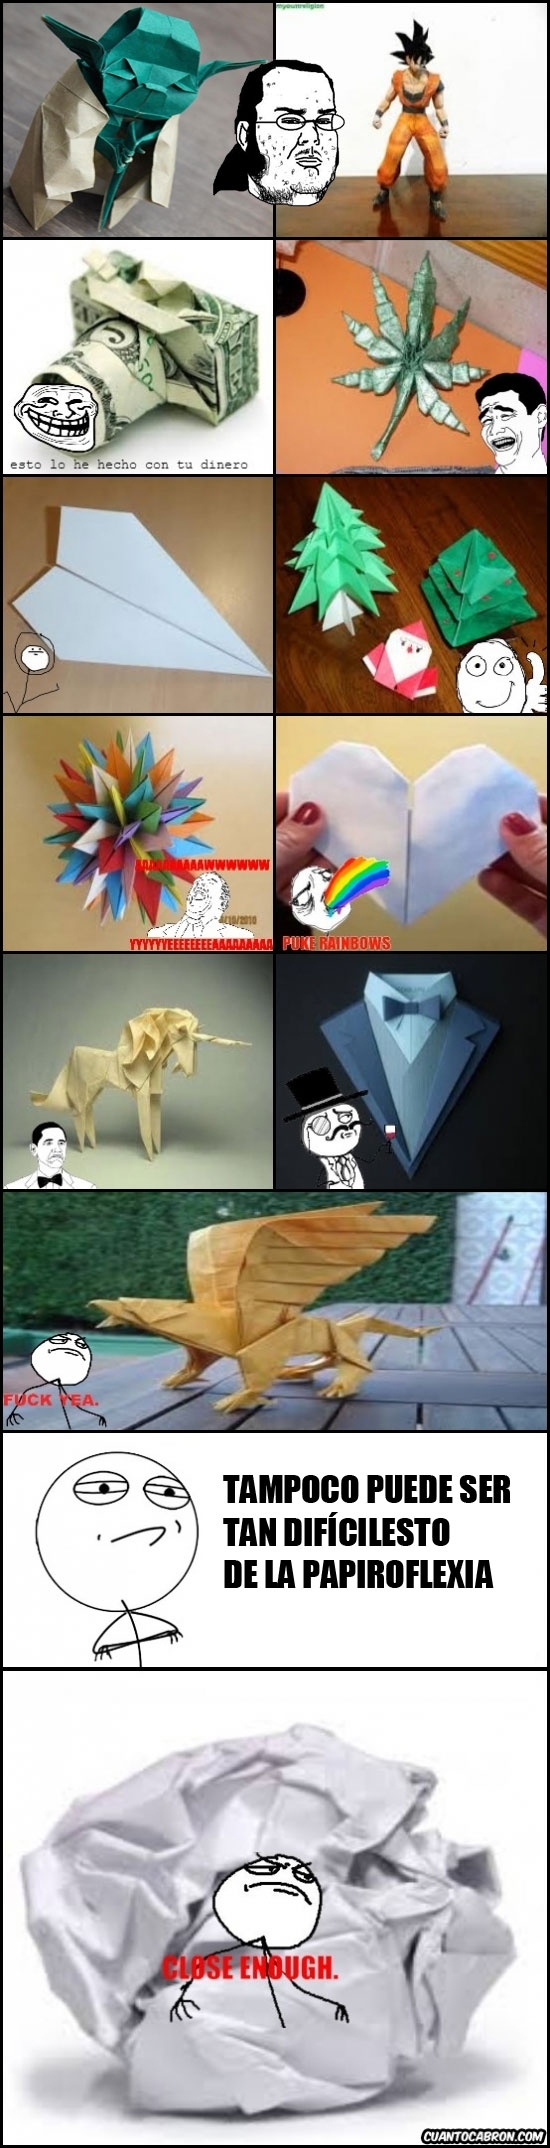 bola de papel,close enough,díficil,origami,papiroflexia,perfectamente mal